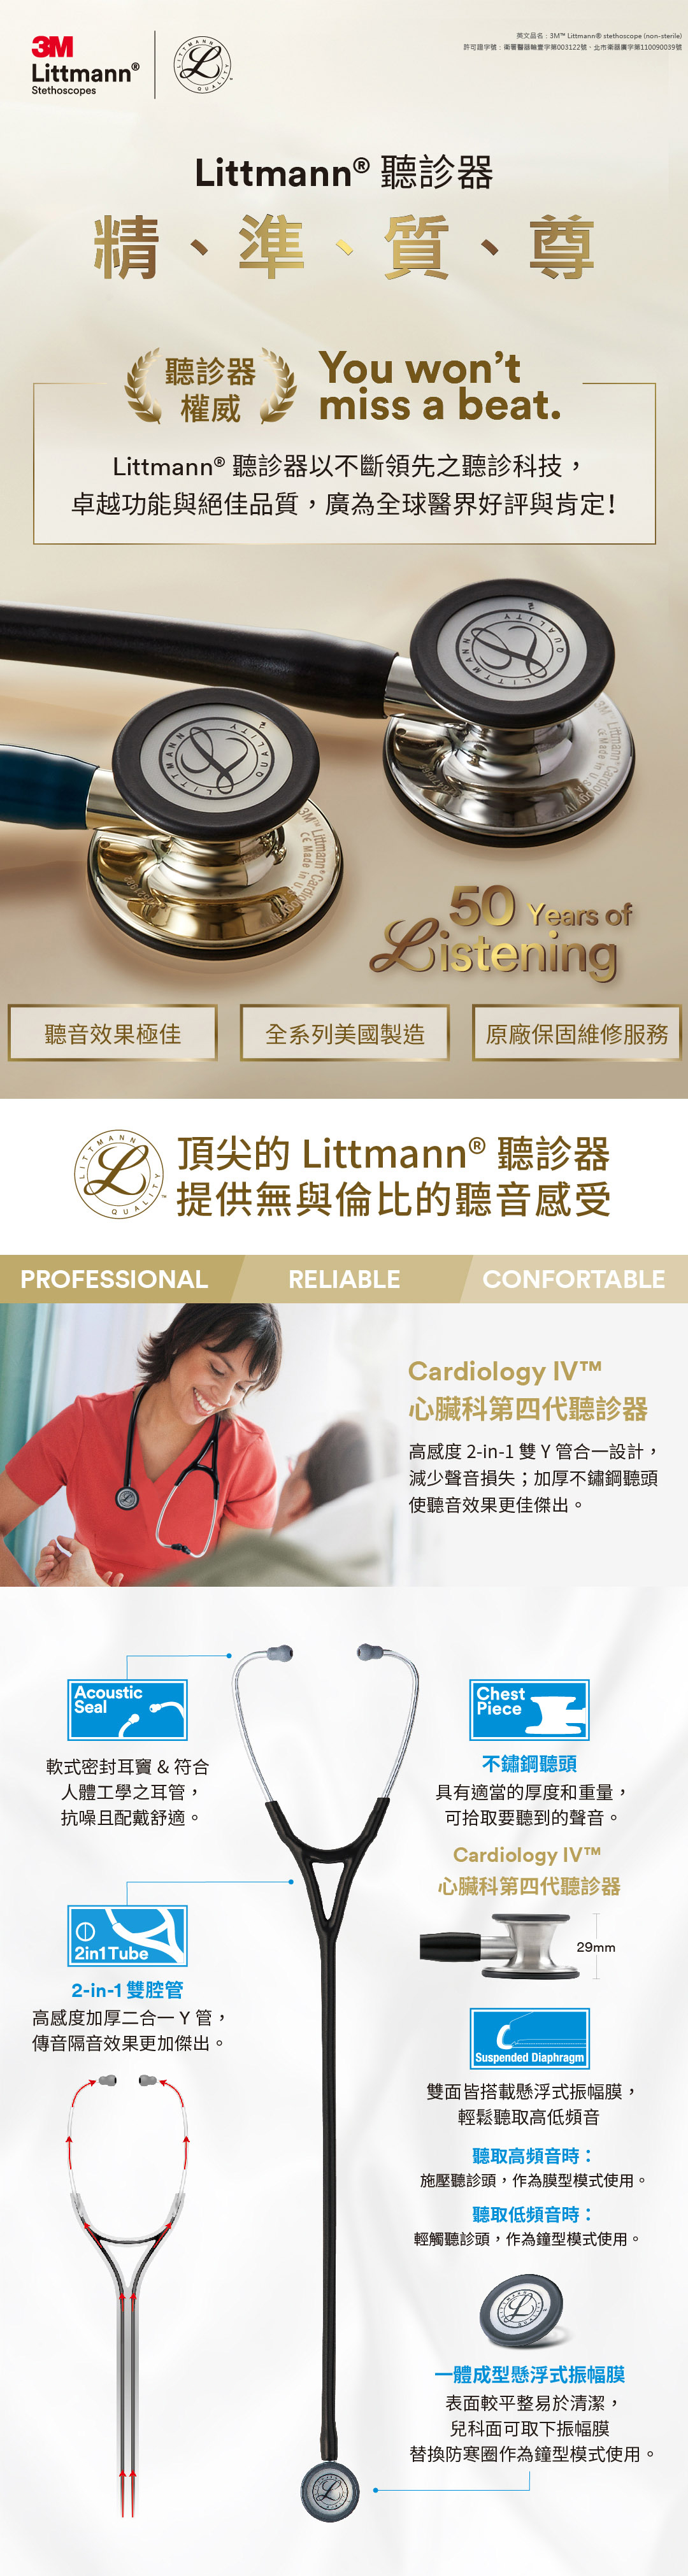 3M_Littmann_Cardiology4_all_202212